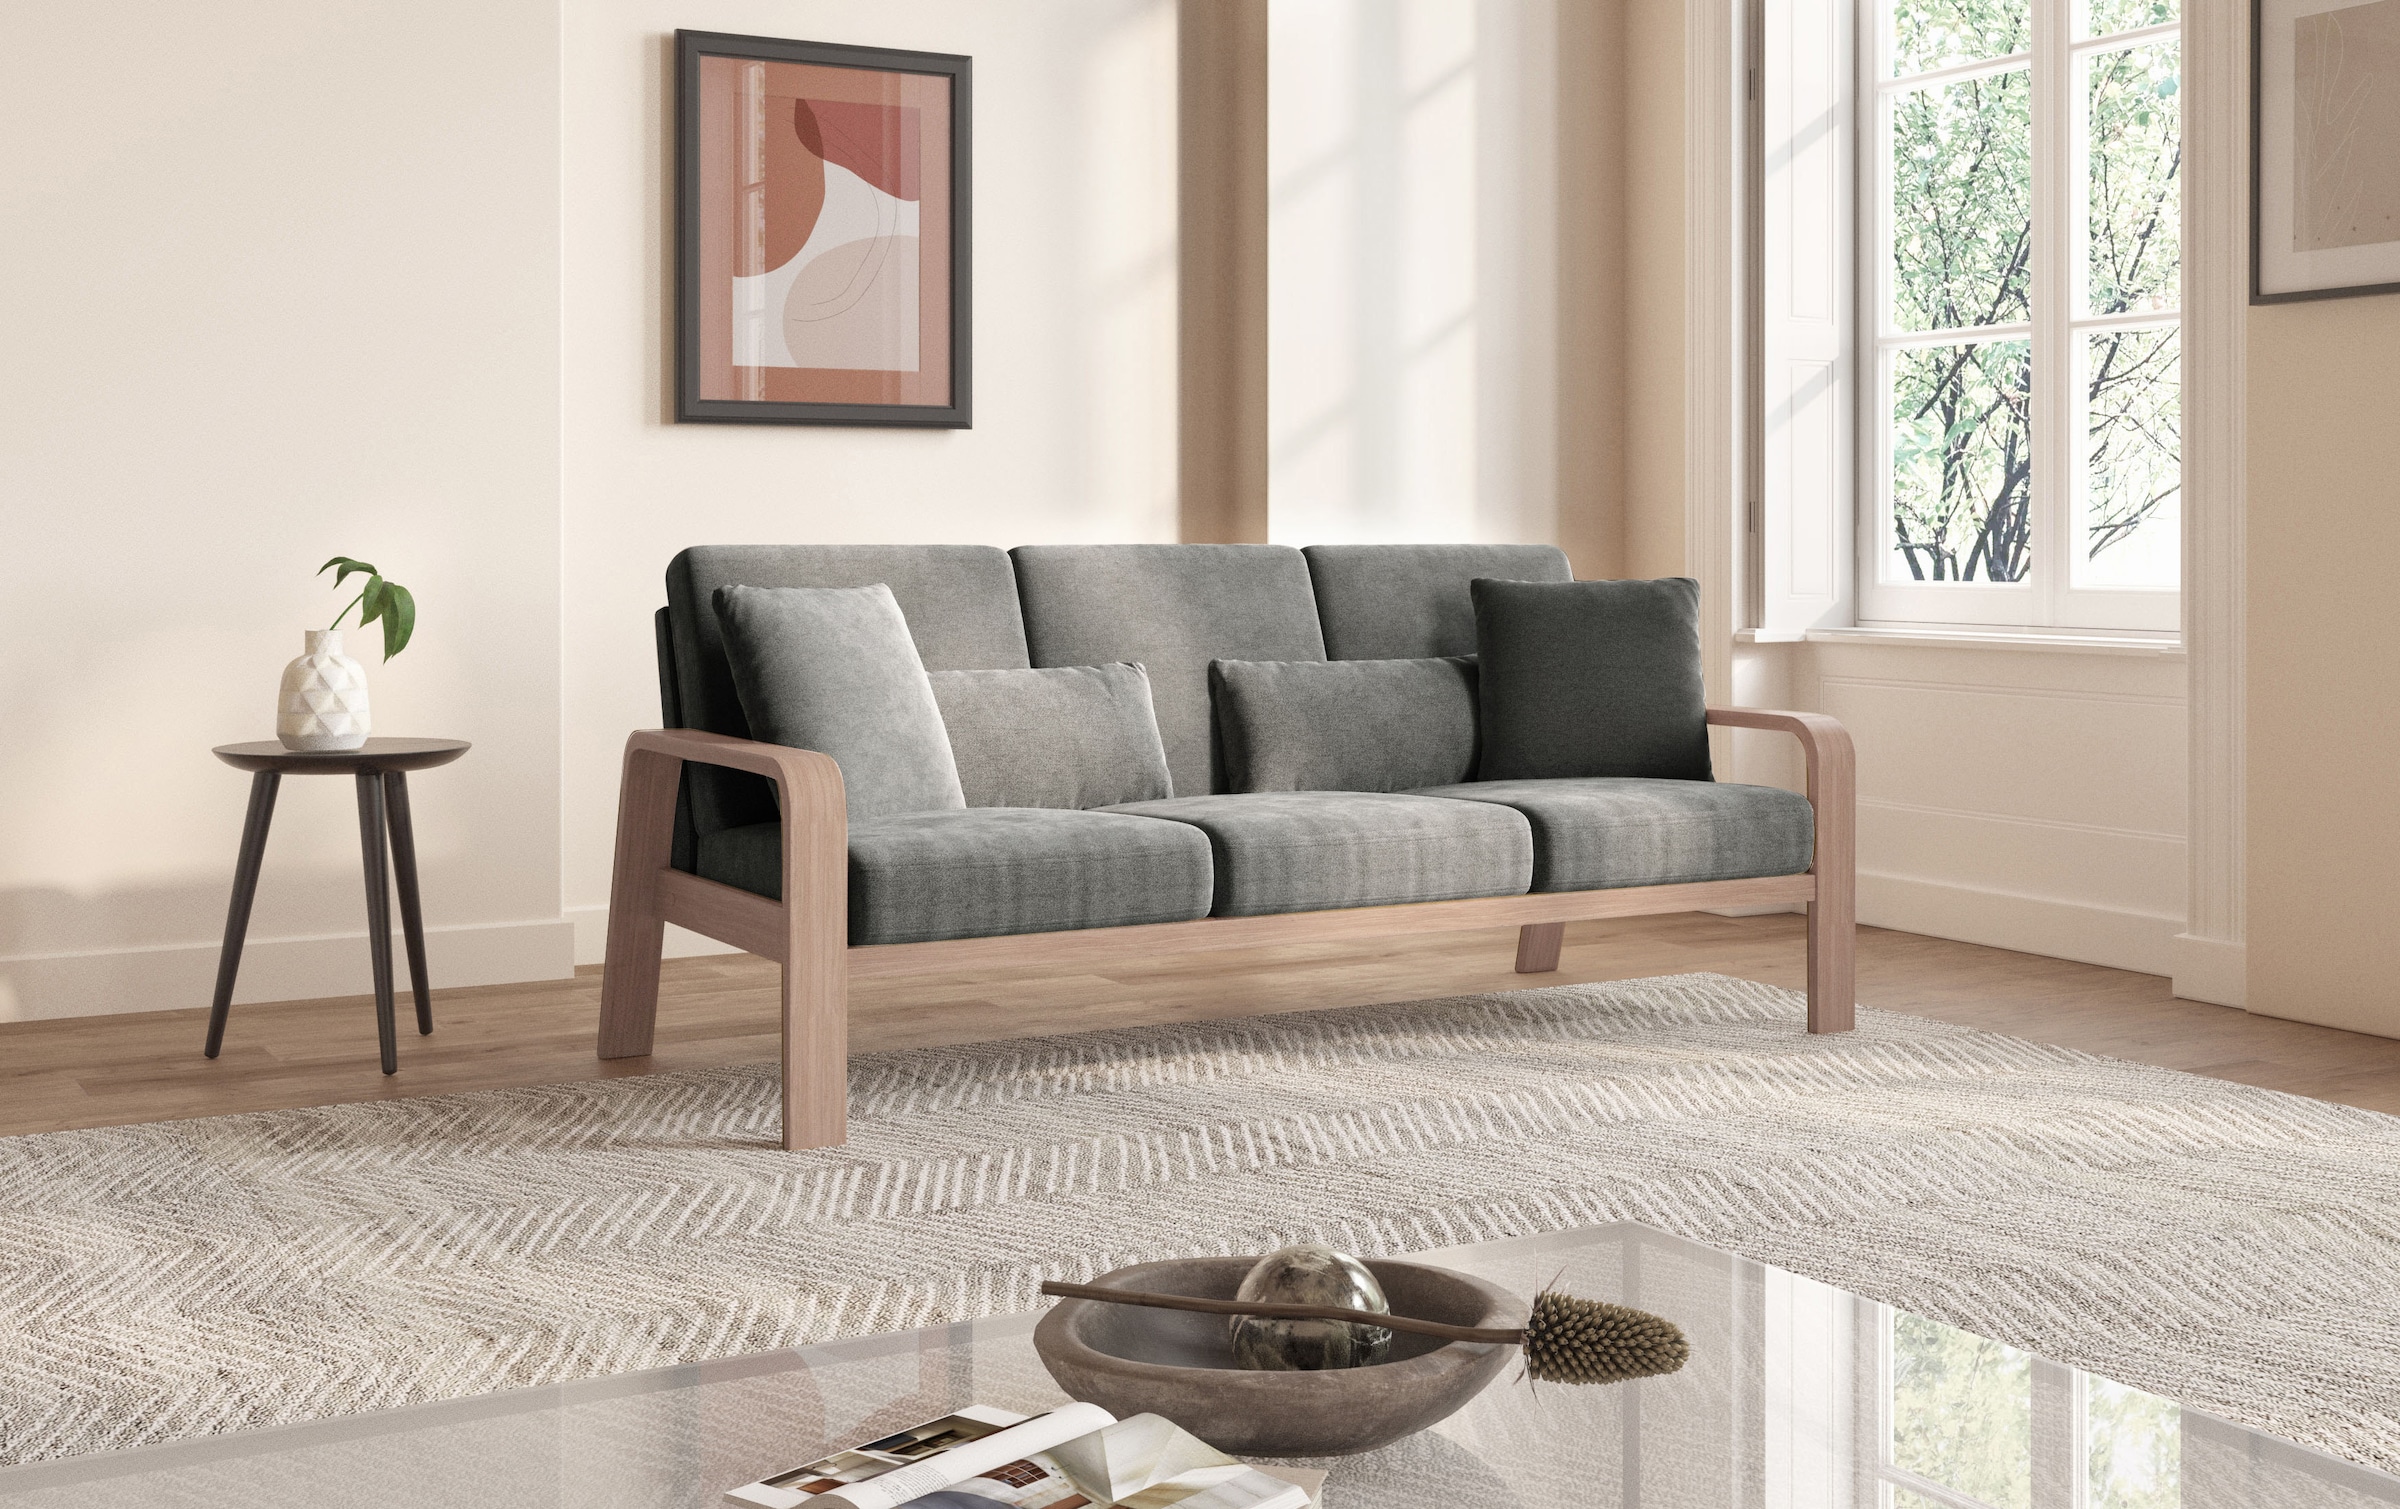 sit&more 3-Sitzer »Kolding«, Armlehnen aus Buchenholz in natur, verschiedene Bezüge und Farben